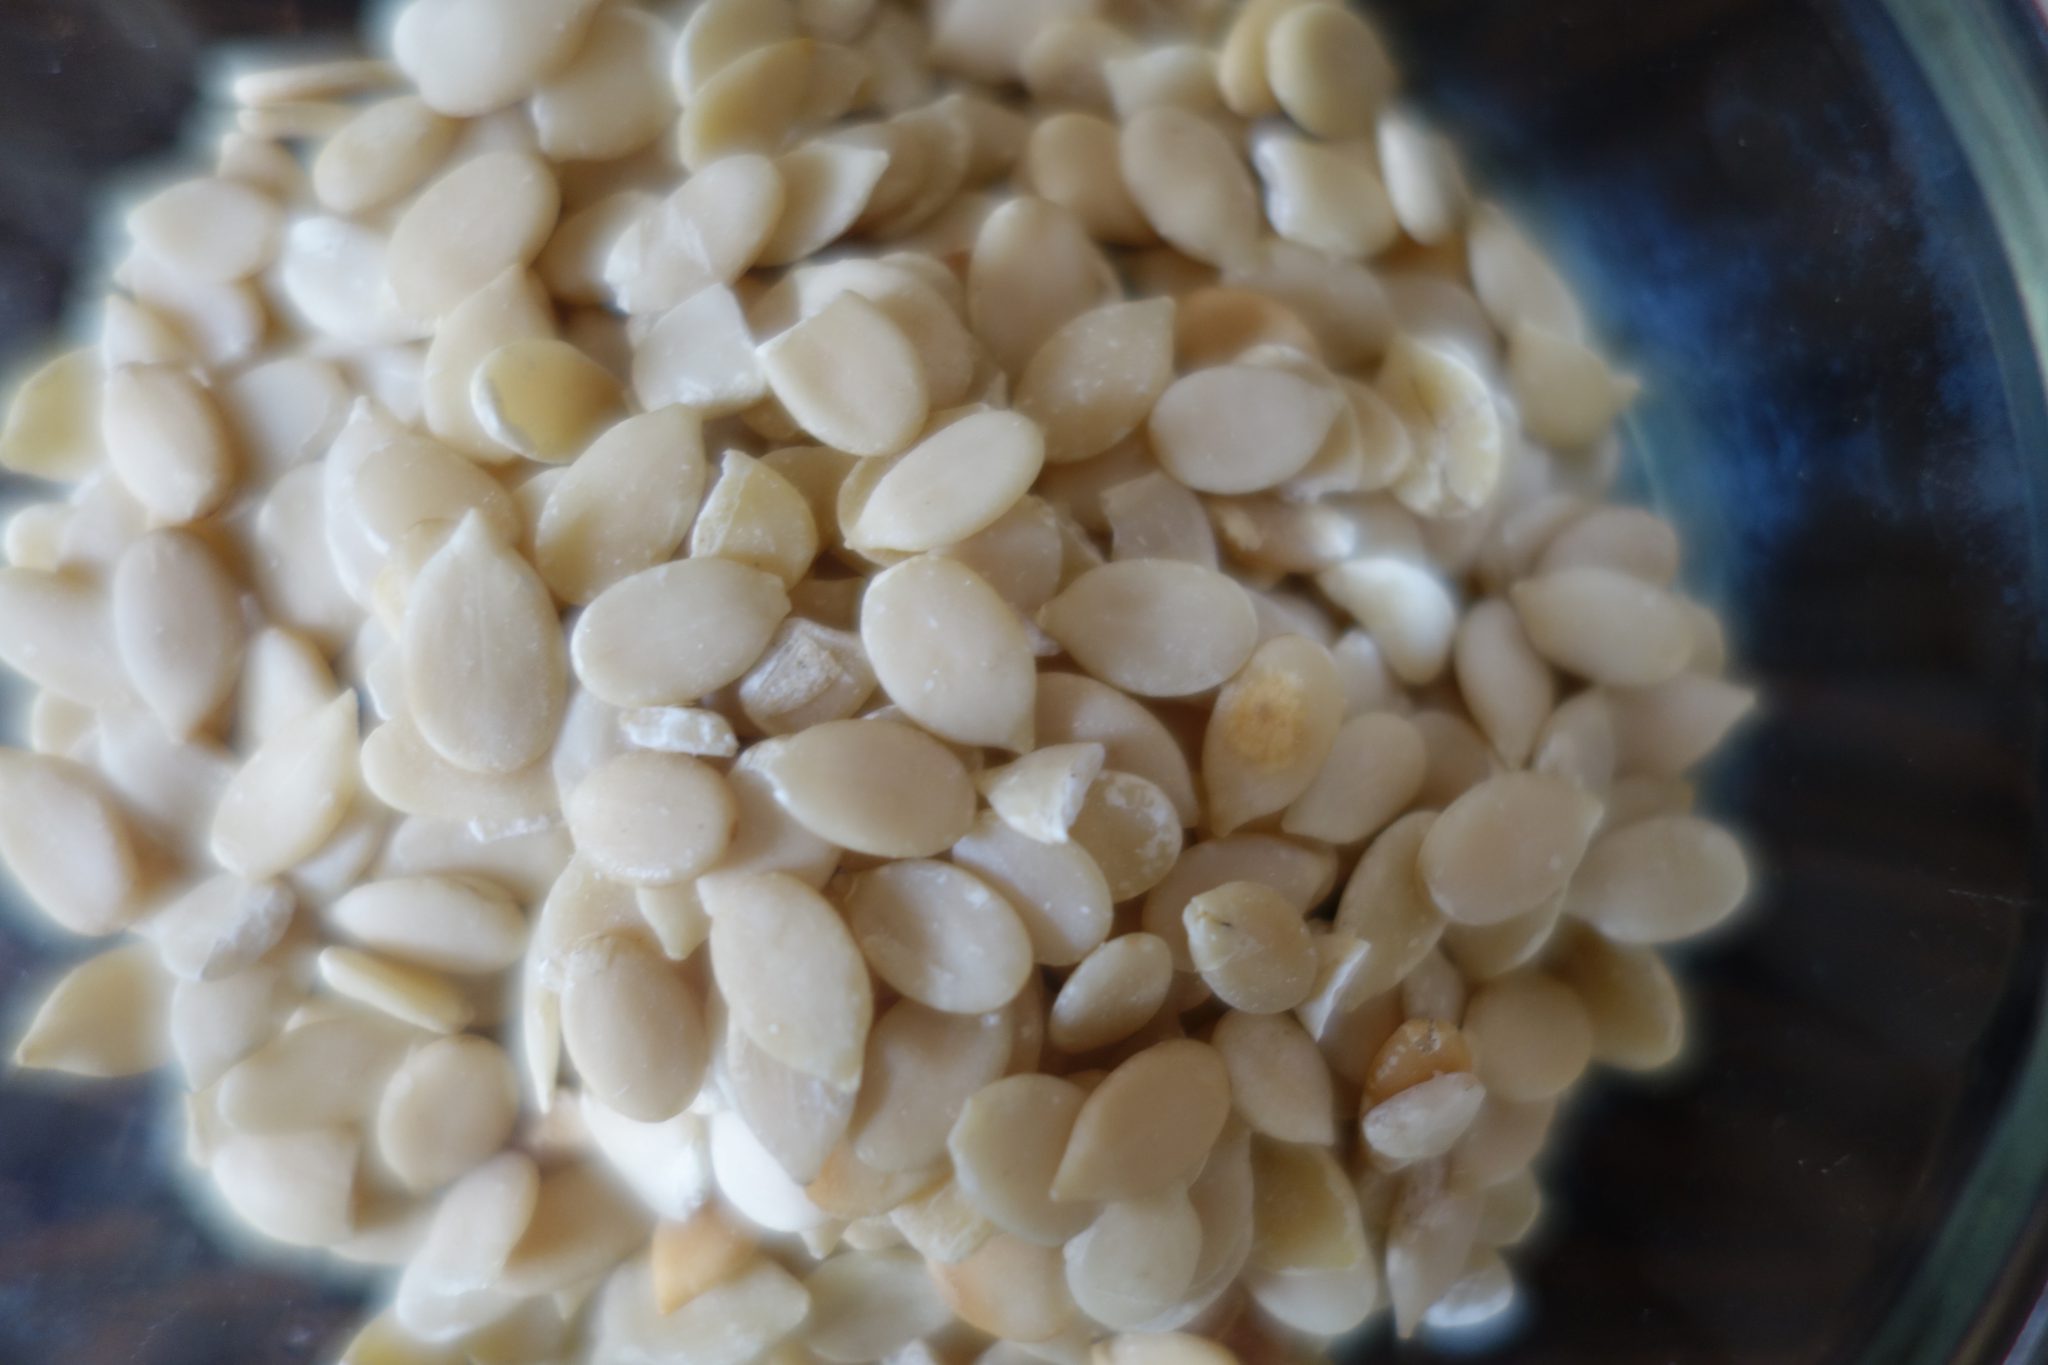 muskmelon seeds